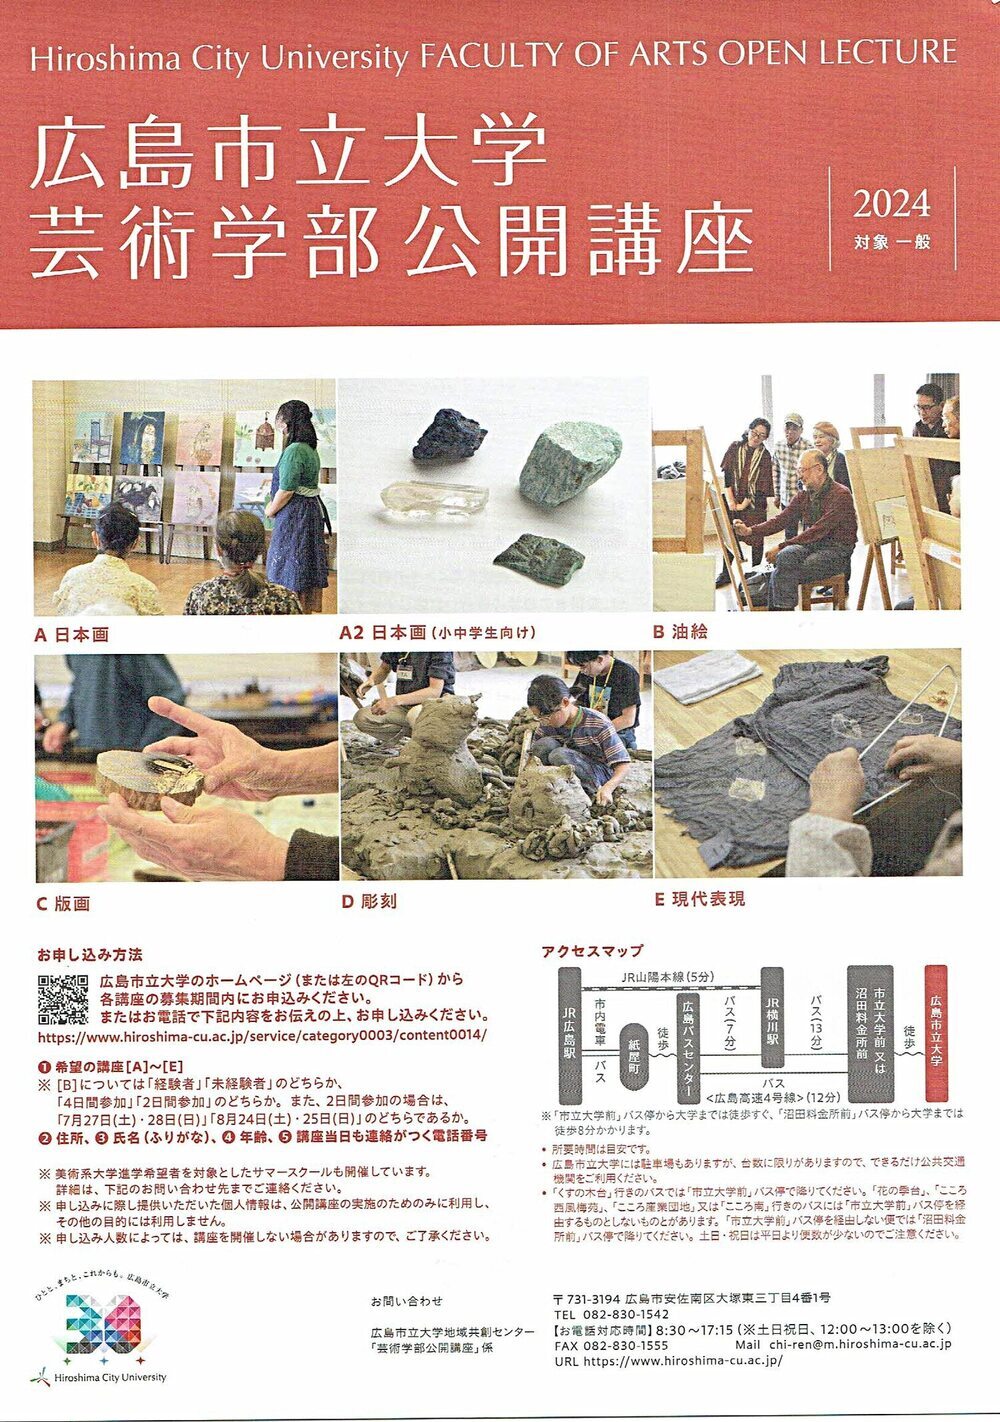 広島市立大学芸術学部公開講座「油絵」